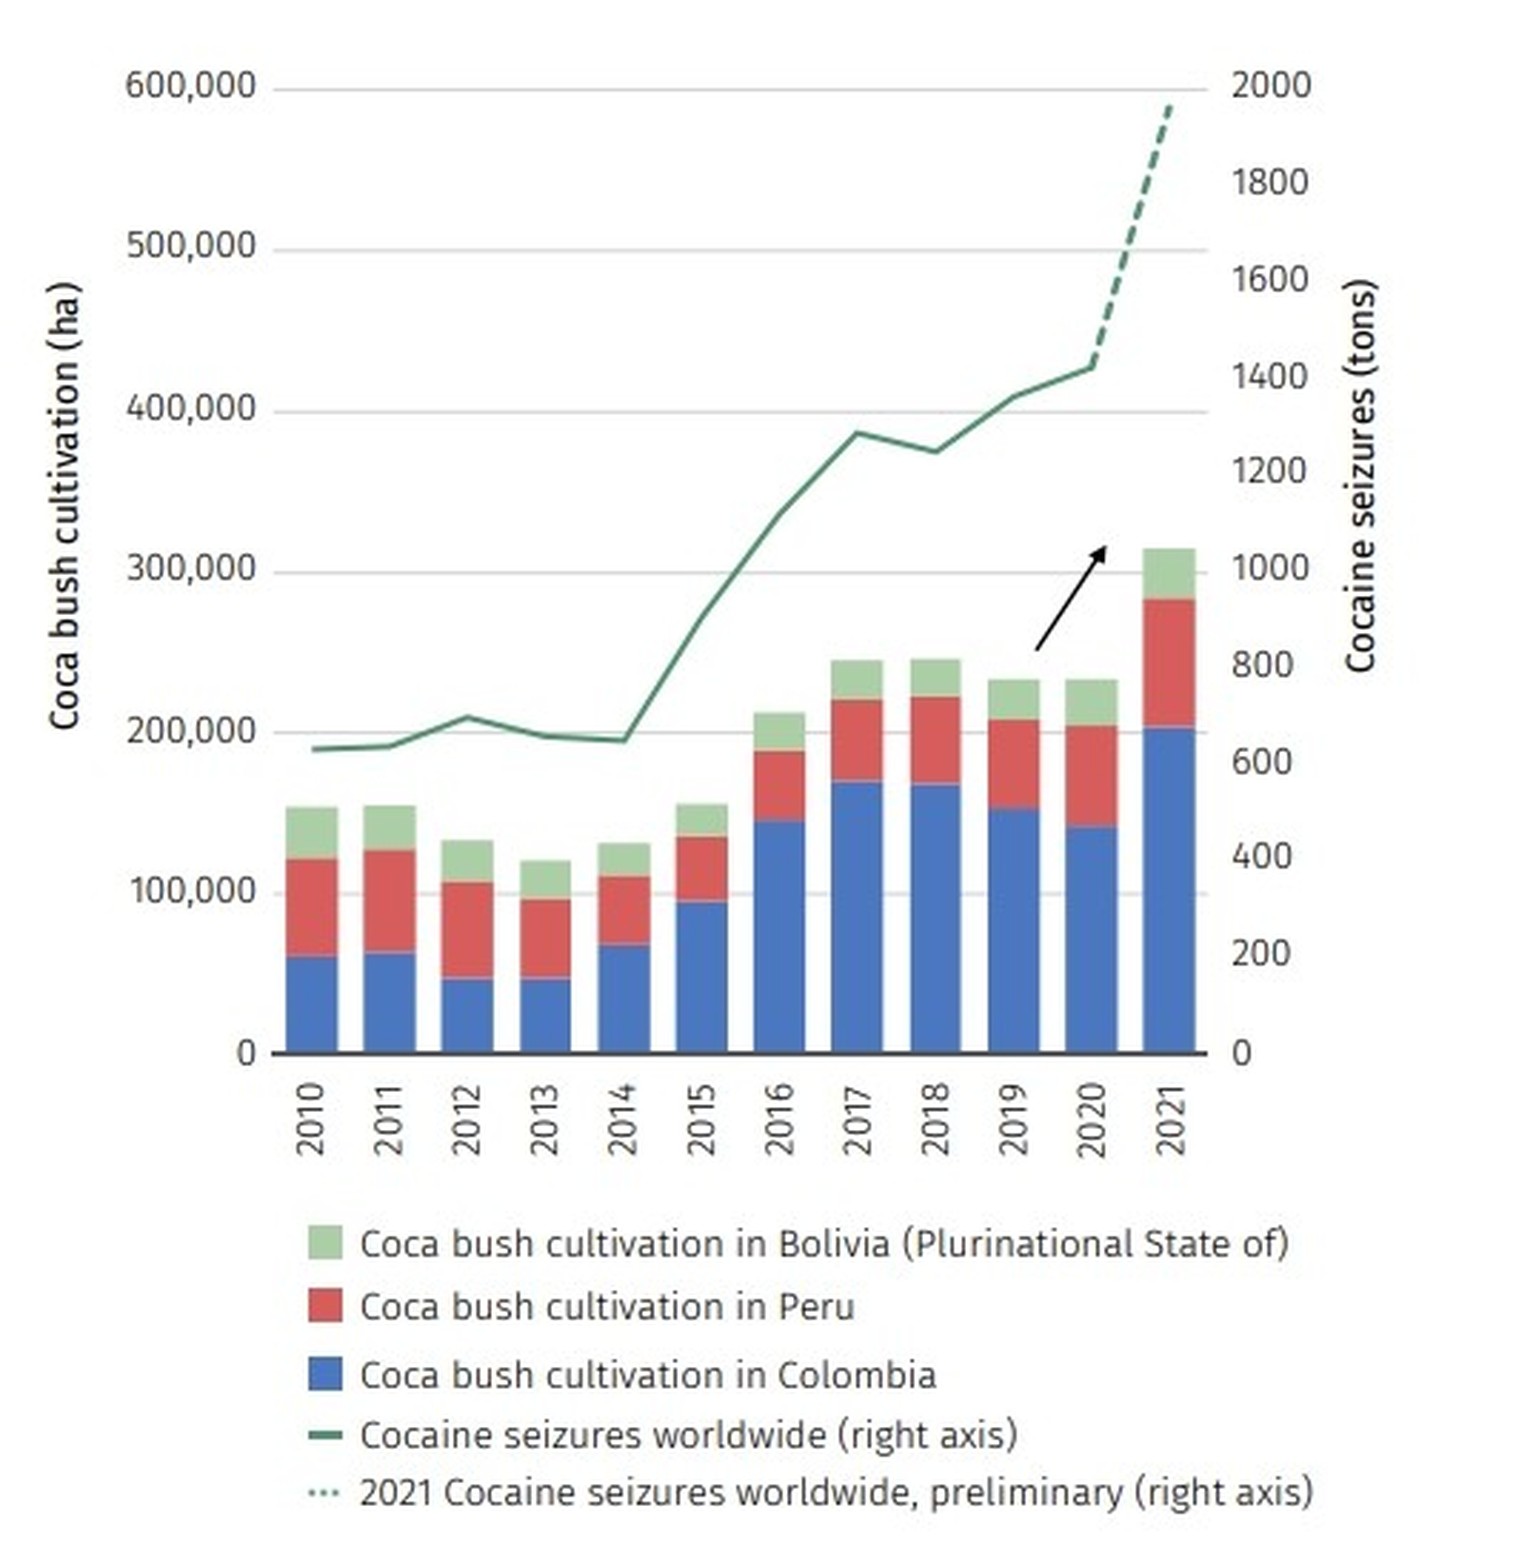 Kokainproduktion in Kolumbien, Peru und Bolivien sowie weltweit beschlagnahmtes Kokain, 2010-2021.
https://www.unodc.org/documents/data-and-analysis/cocaine/Global_cocaine_report_2023.pdf